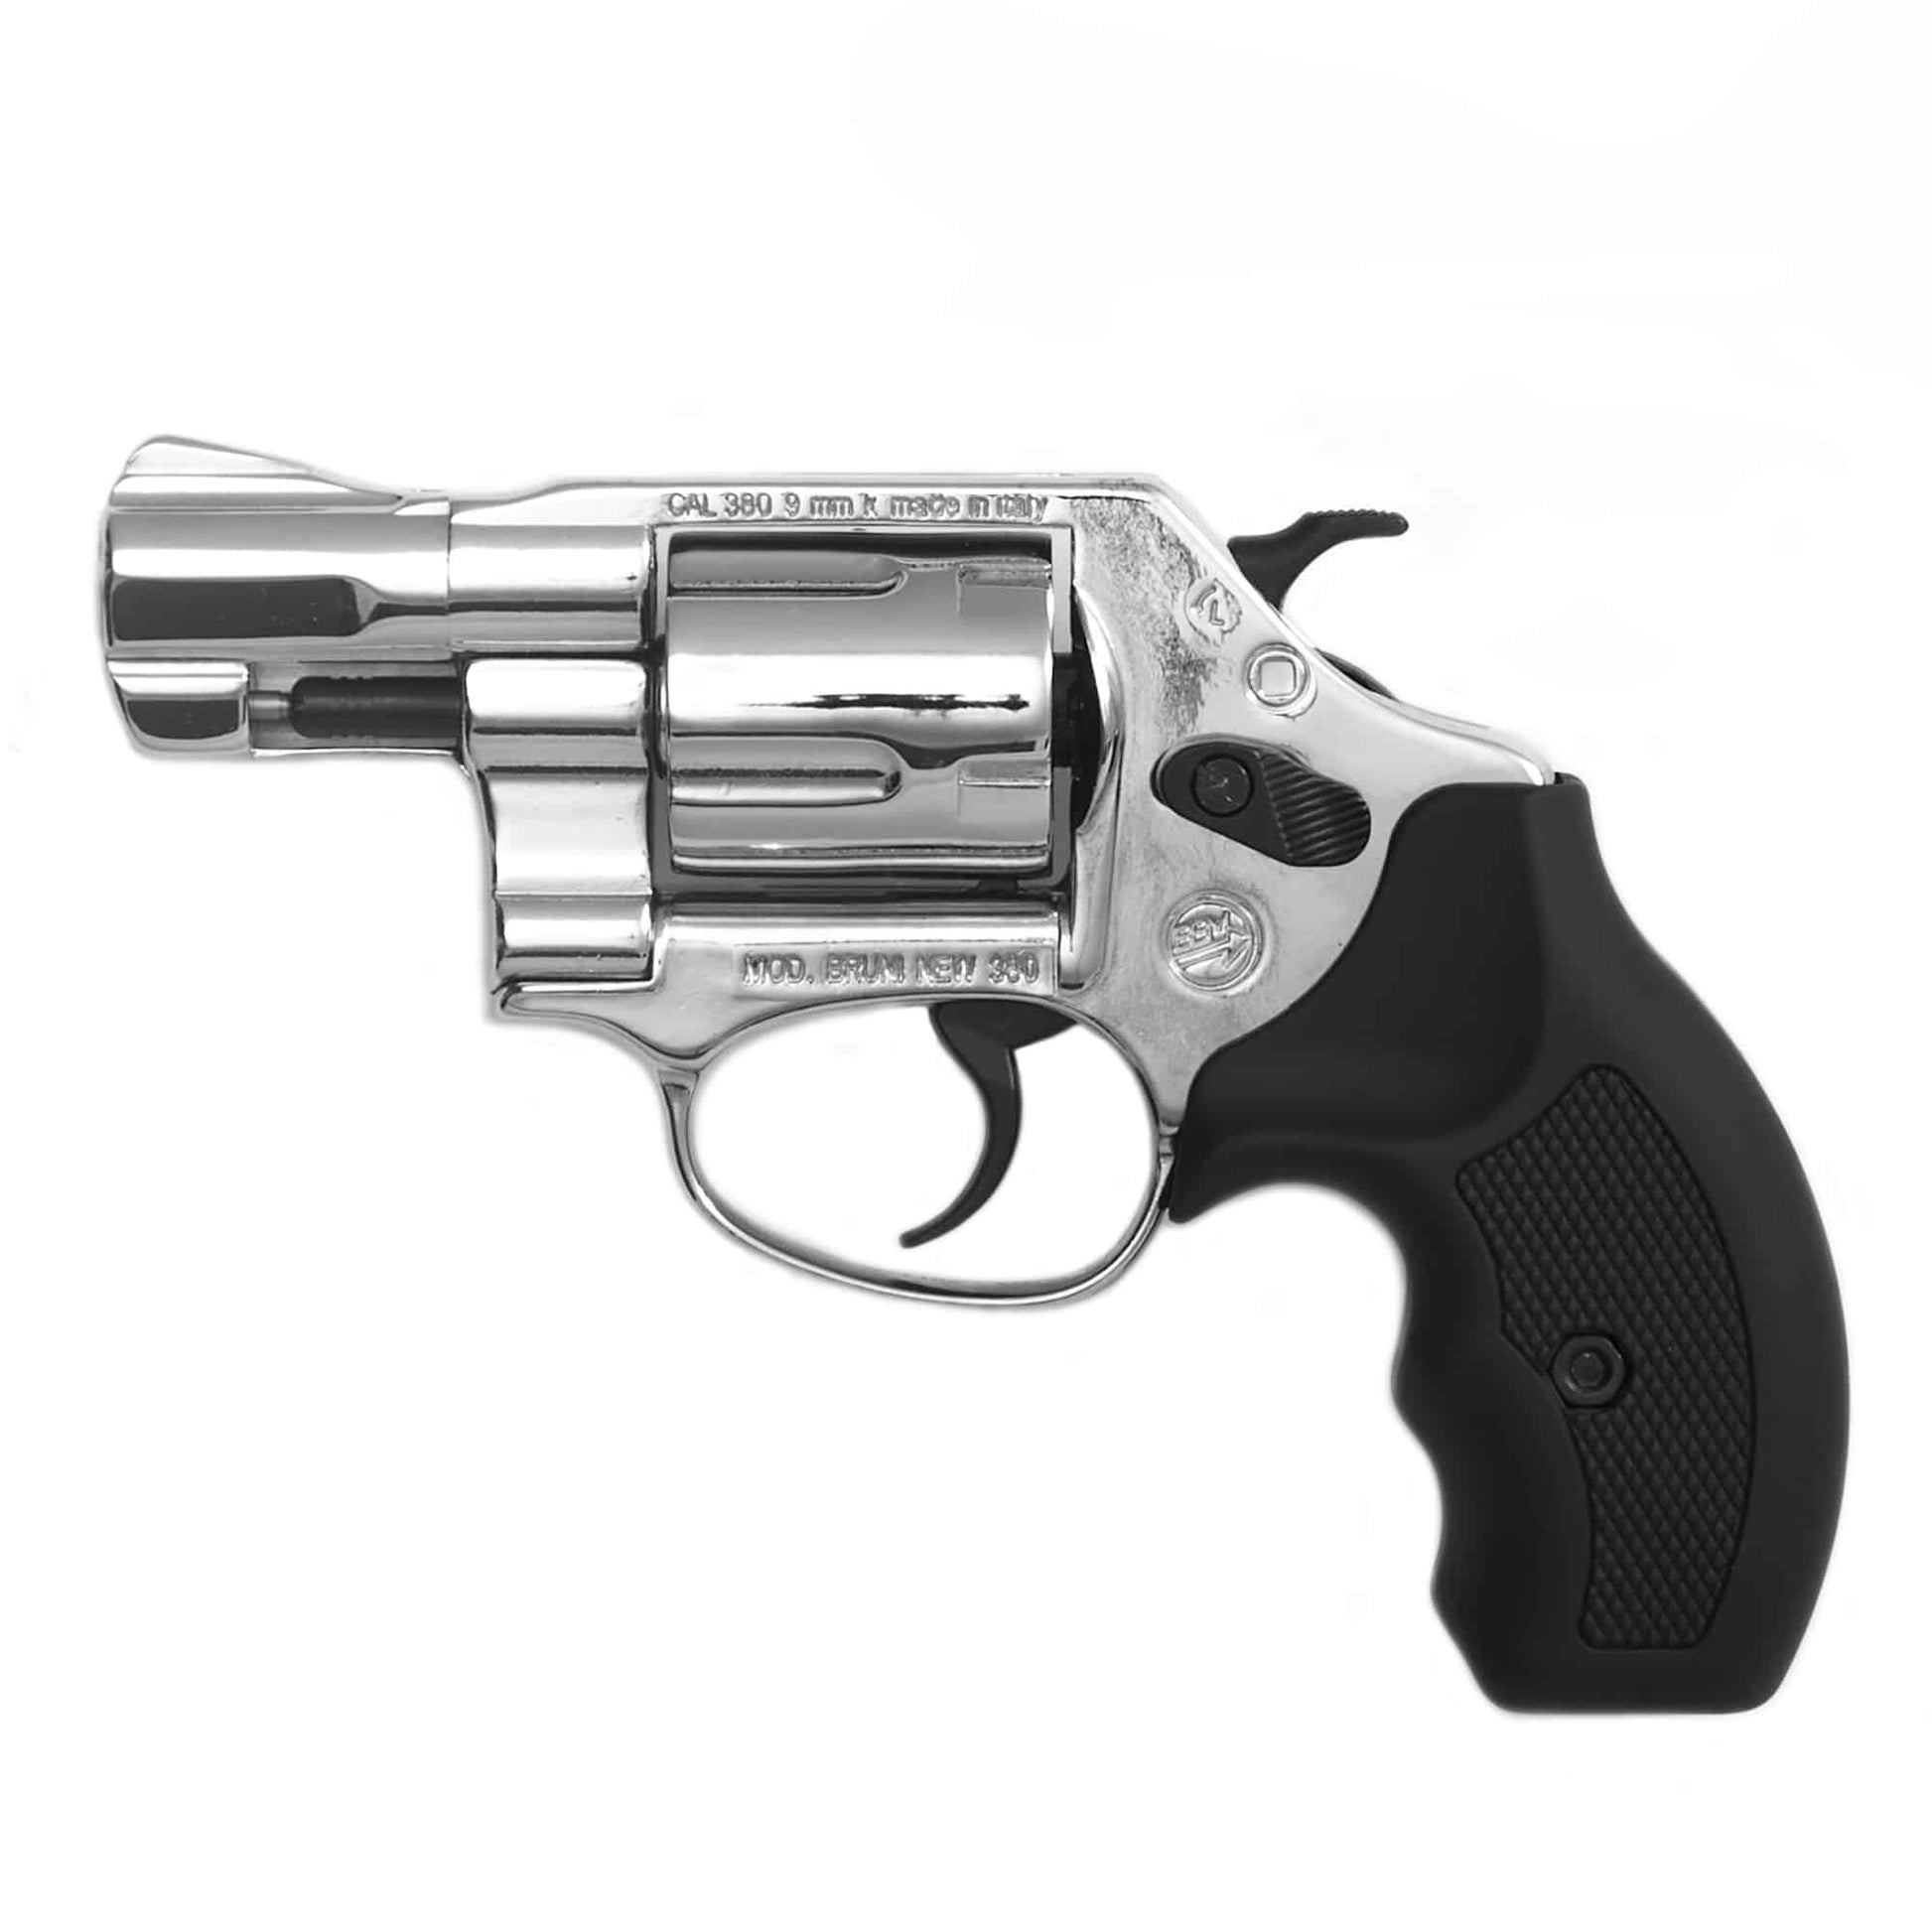 revolver fogueo bruni magnum 380